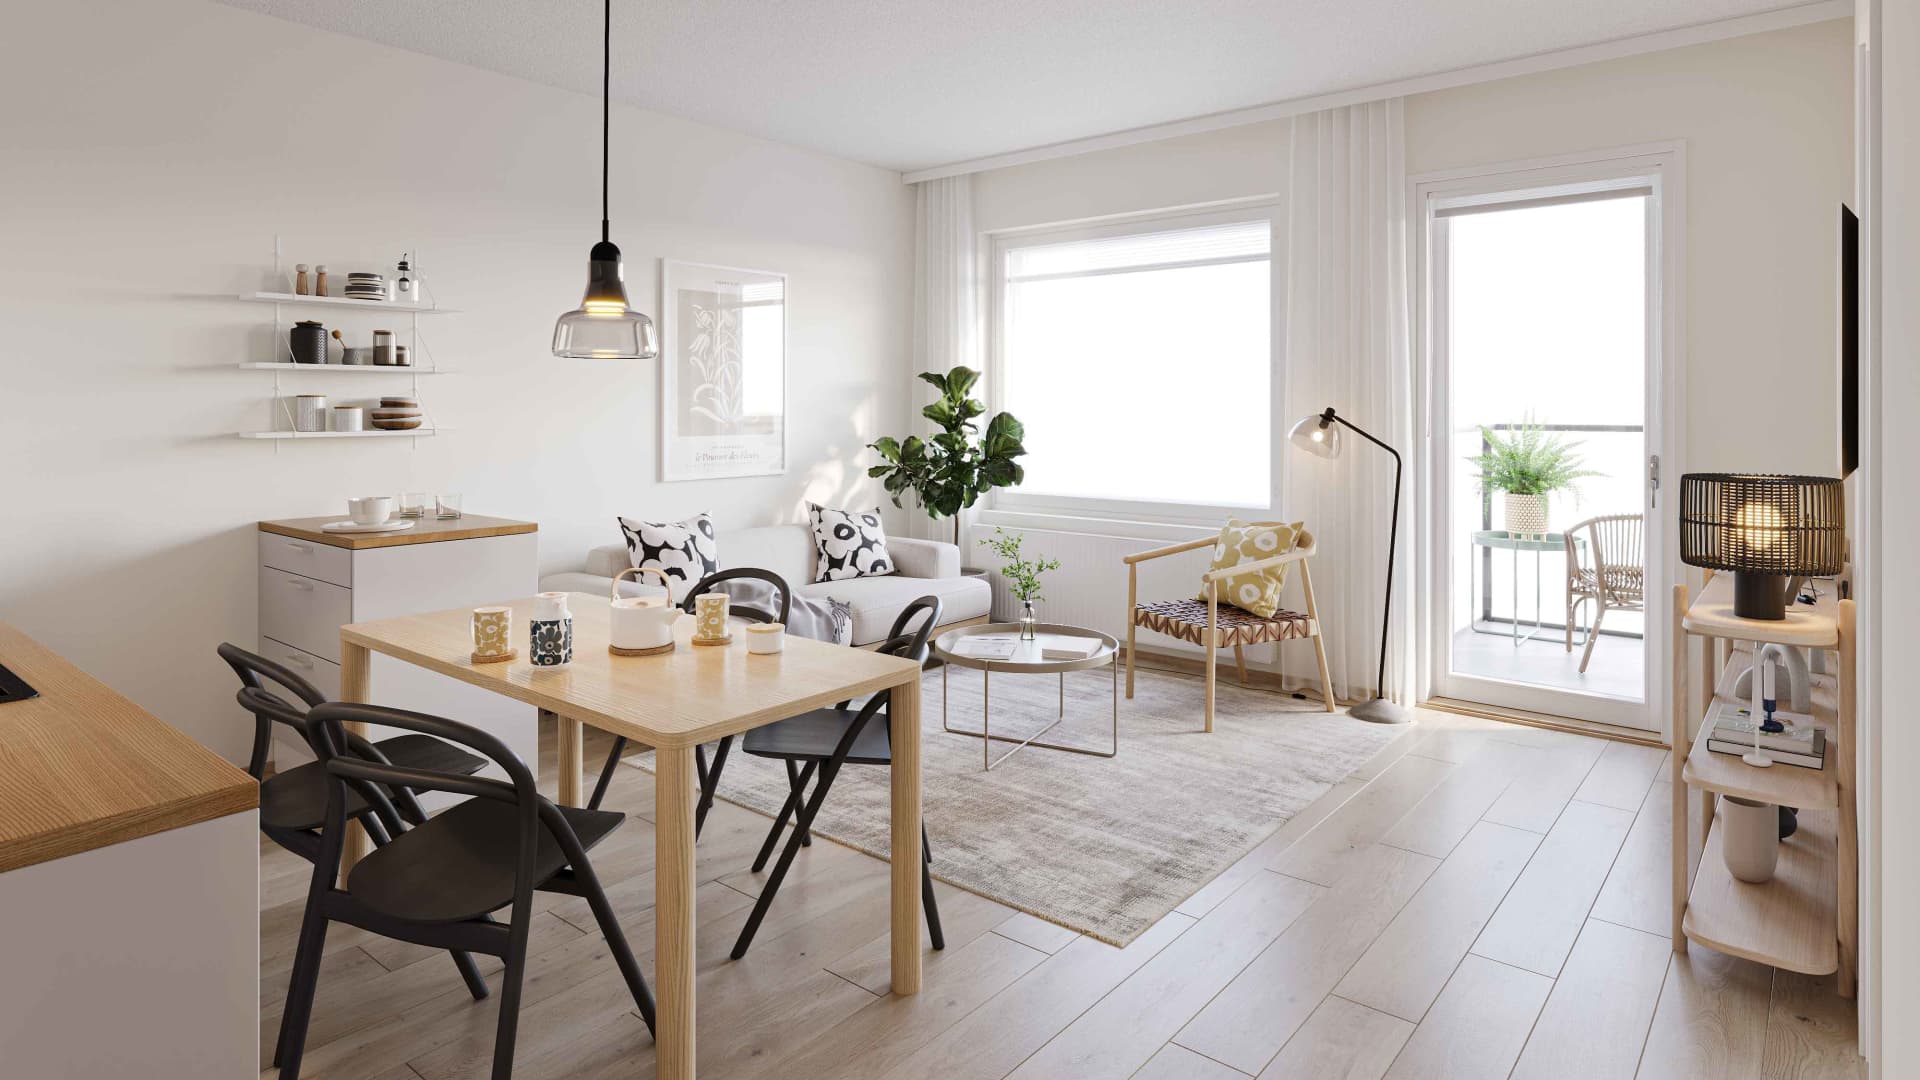 Suuntaa antava visualisointi Rovaniemen Kielaan tulevasta Lumileinikin kodista. Asunnoissa yhdistyy laadukkaat materiaalit ja toimivat kodinkoneet.